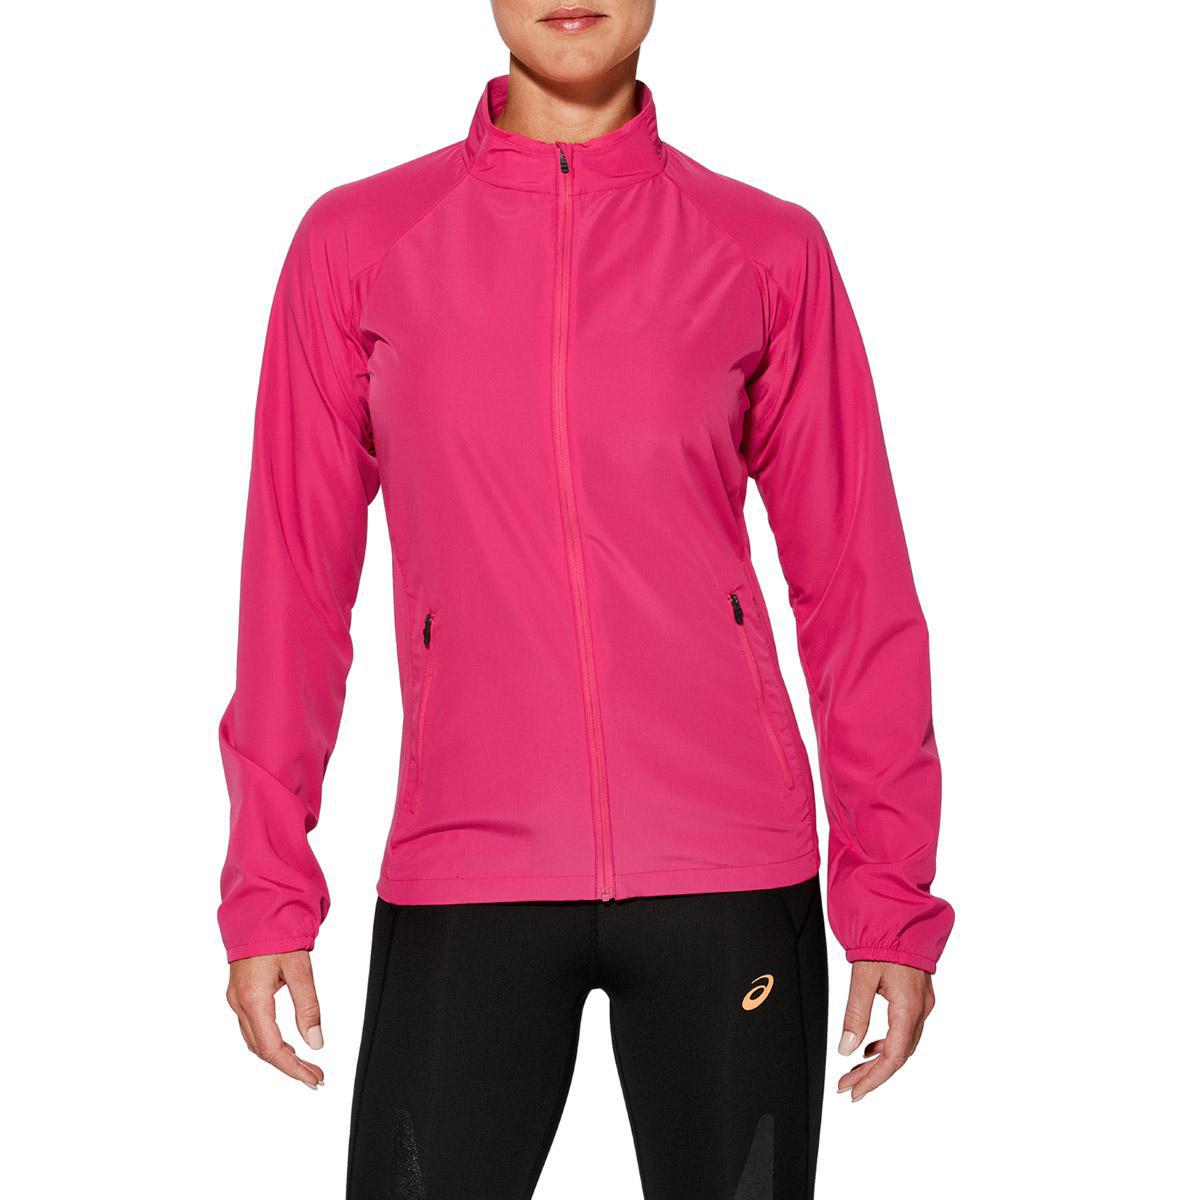 asics woven women's running jacket